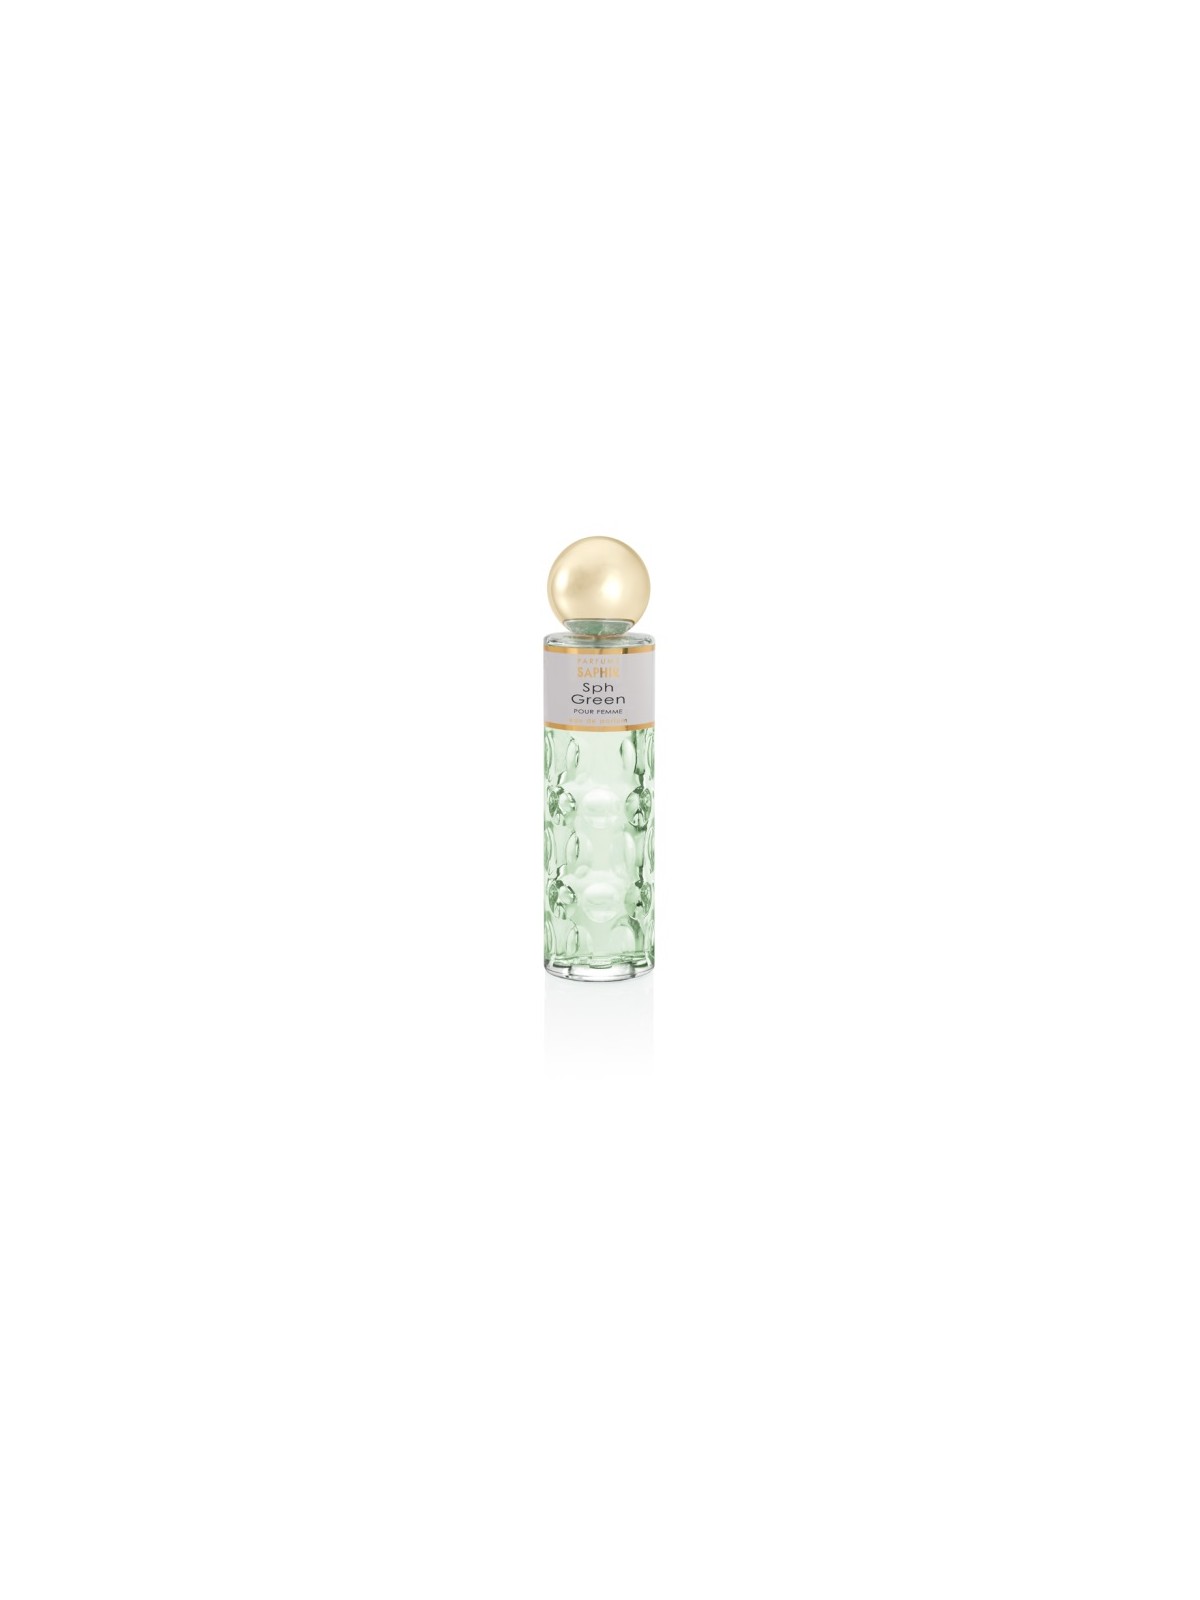 Comprar Perfume Saphir Green 200ml en Perfumes para mujer por sólo 12,90 € o un precio específico de 12,90 € en Thalie Care